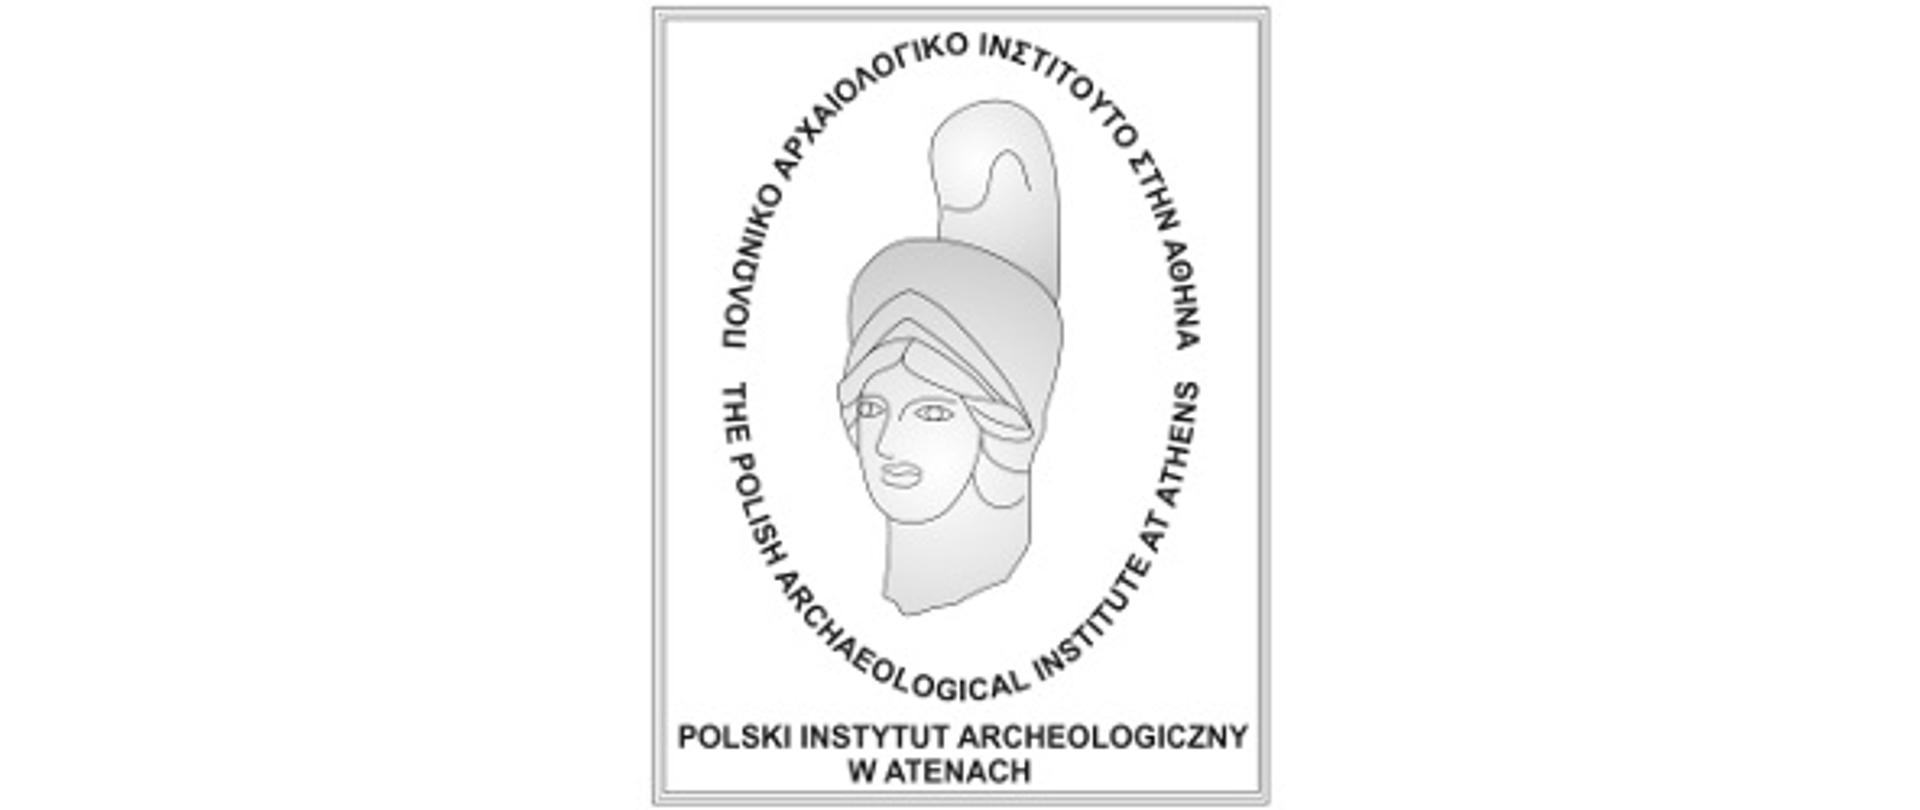 Logotyp Polskiego Instytutu Archeologicznego w Atenach